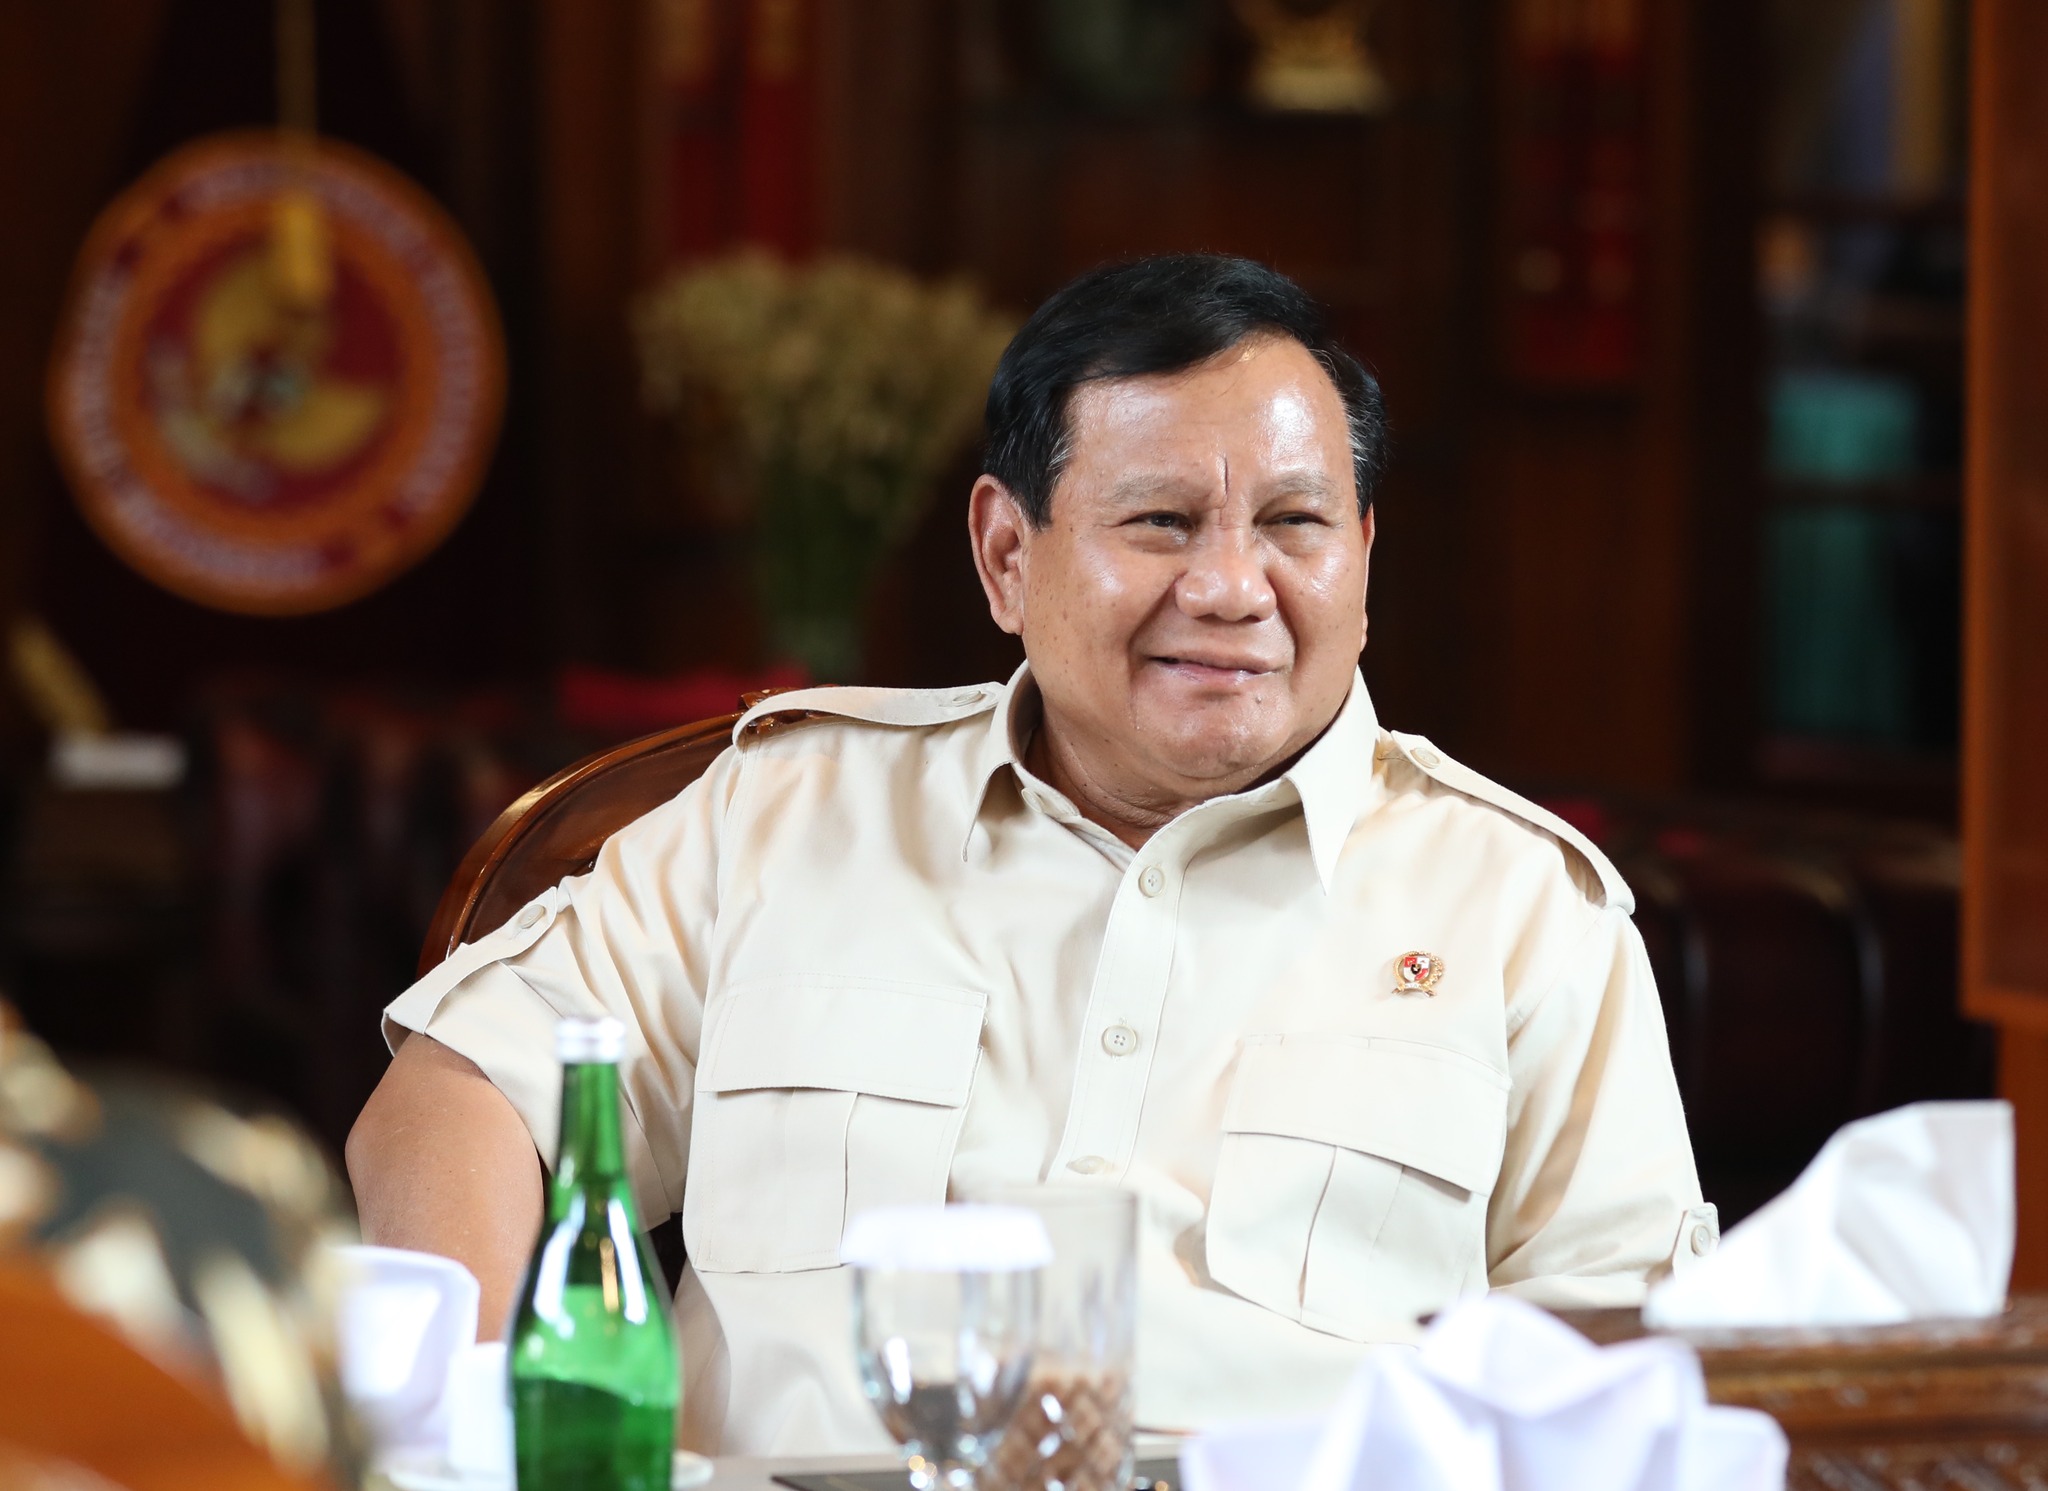 Ketua Umum Gerindra Prabowo Subianto. -Dokumentasi Gerindra-